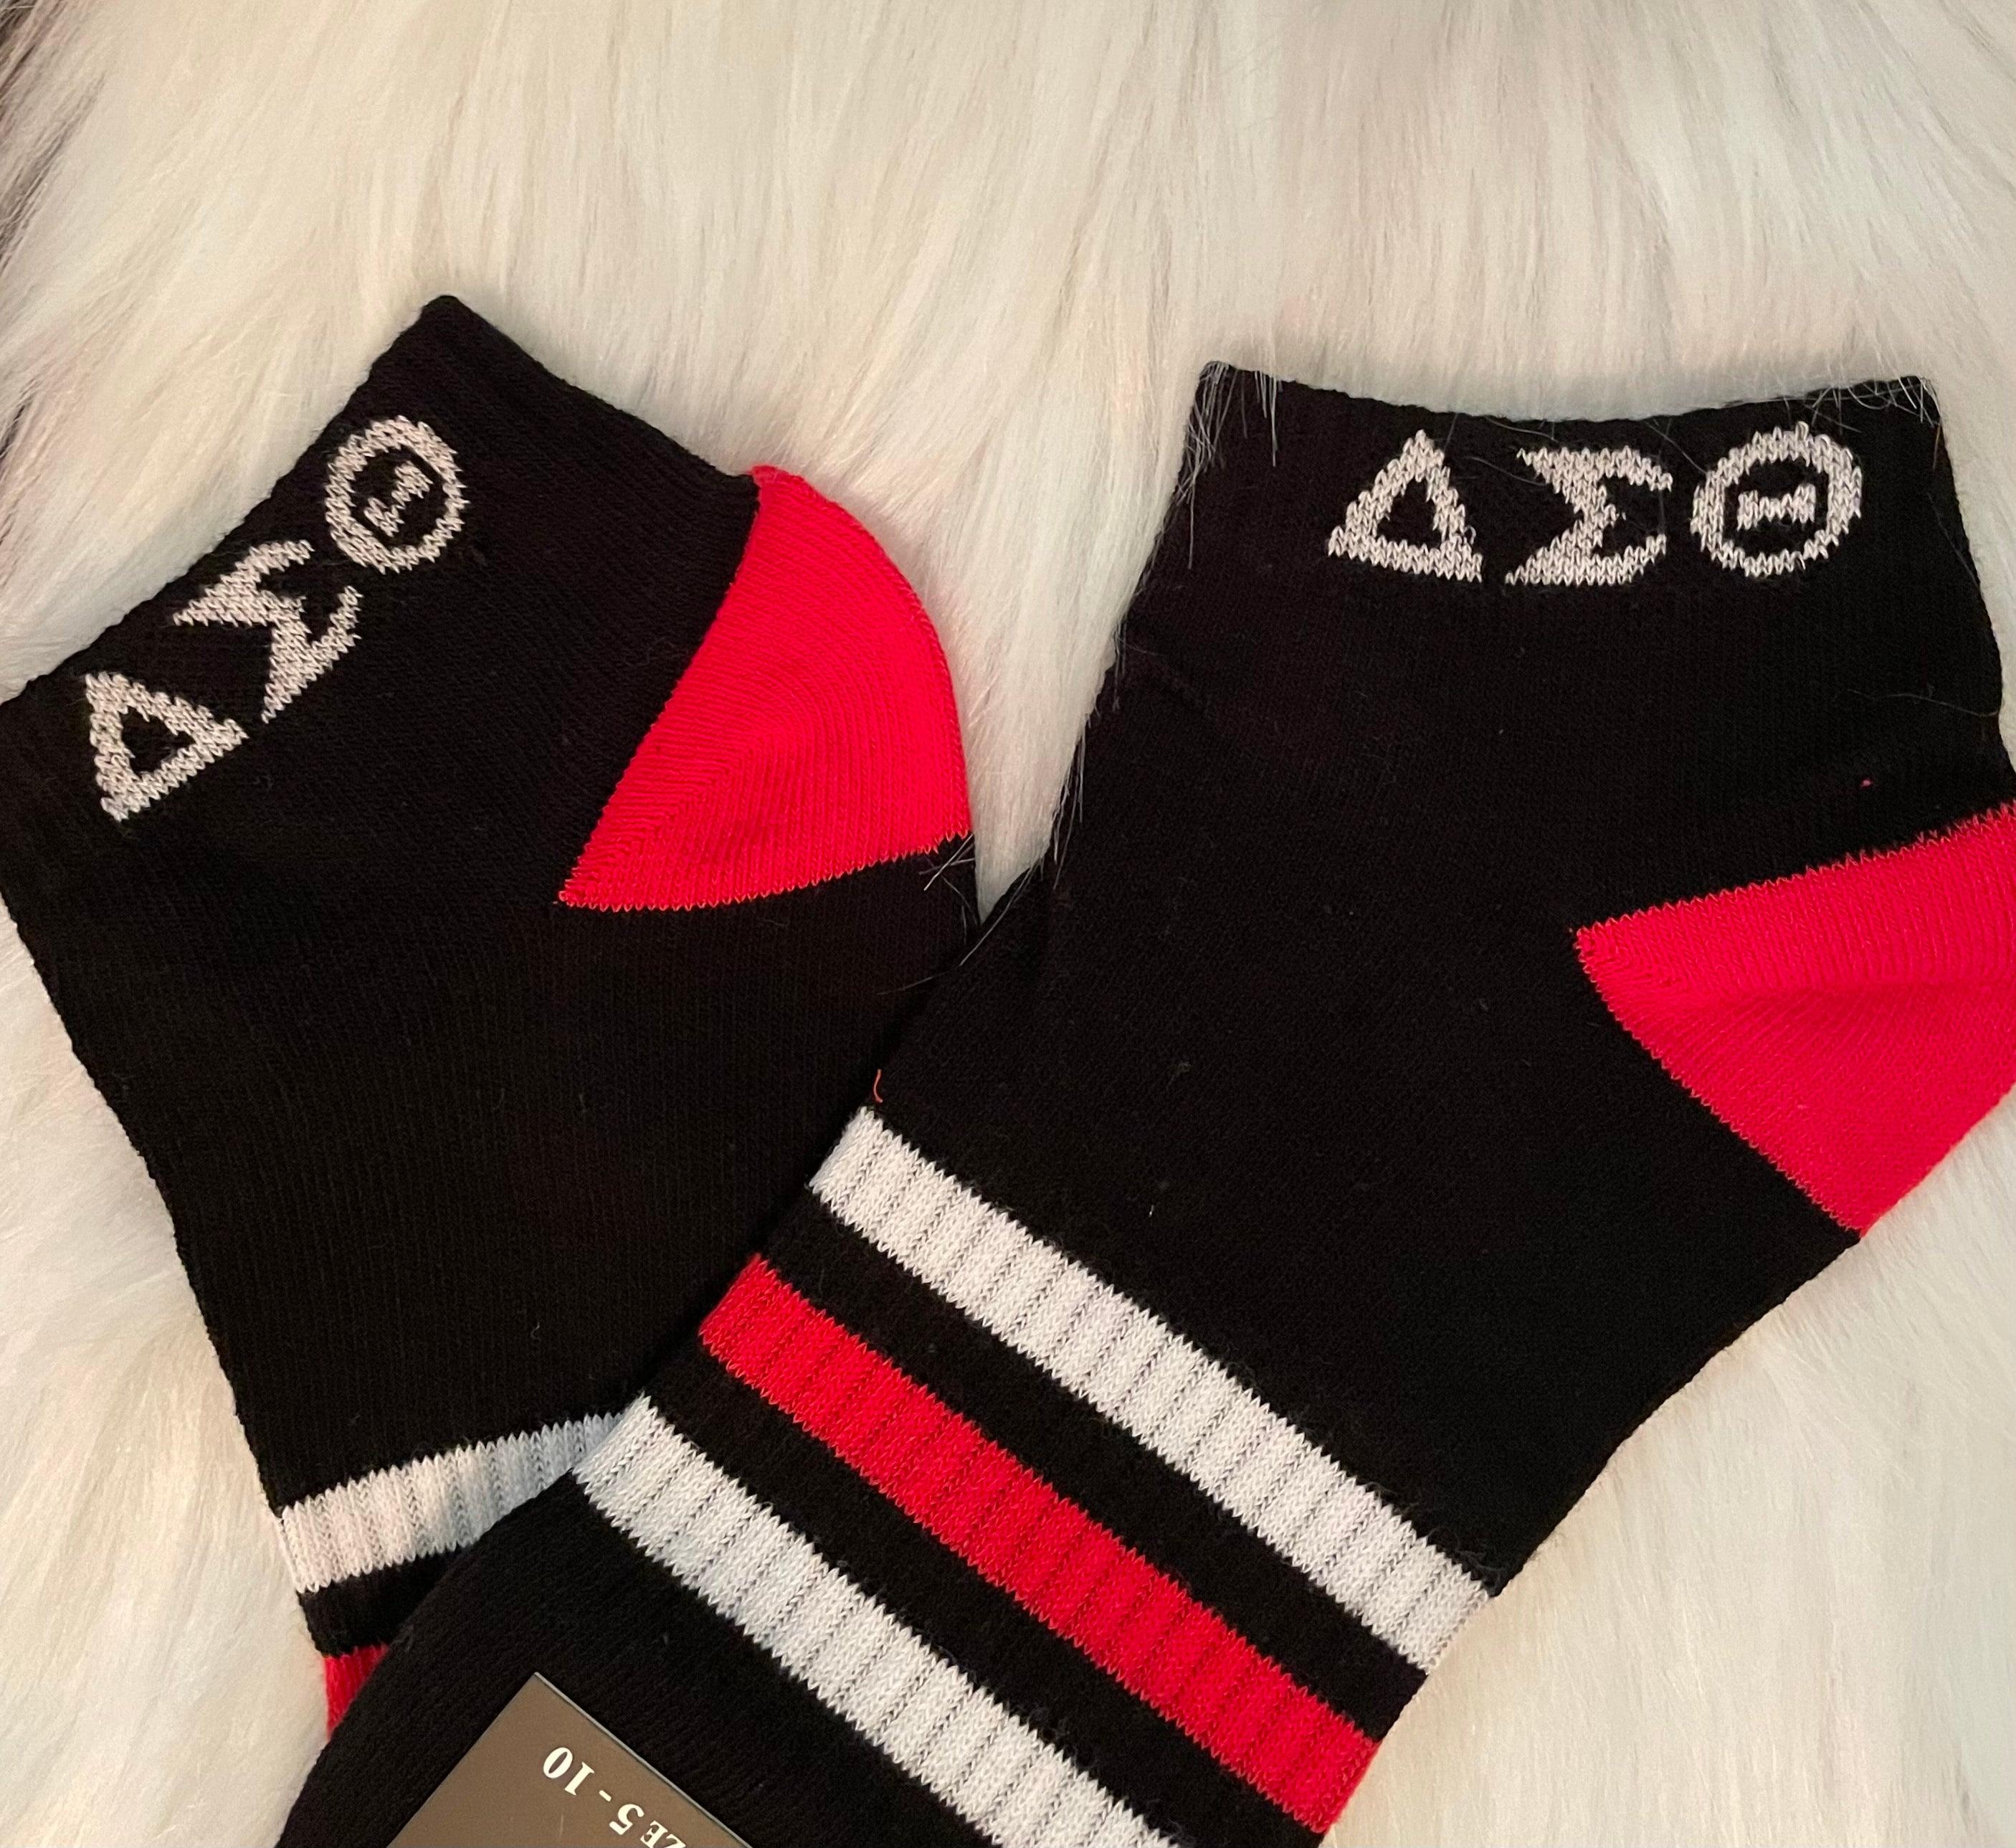 DST Ankle Socks - Black, Red & white